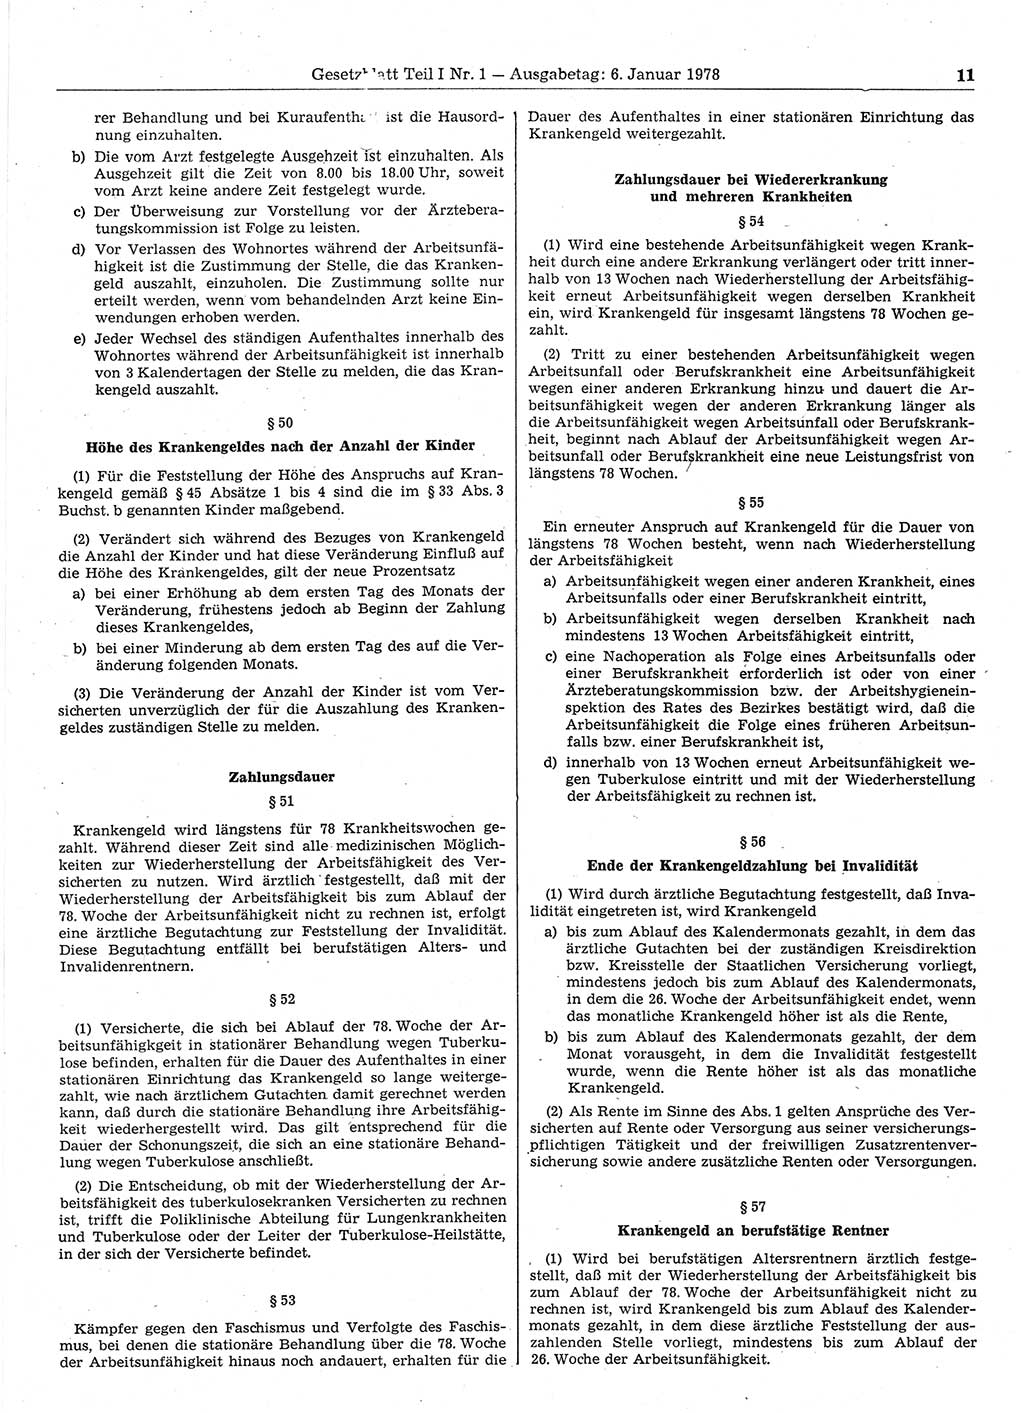 Gesetzblatt (GBl.) der Deutschen Demokratischen Republik (DDR) Teil Ⅰ 1978, Seite 11 (GBl. DDR Ⅰ 1978, S. 11)